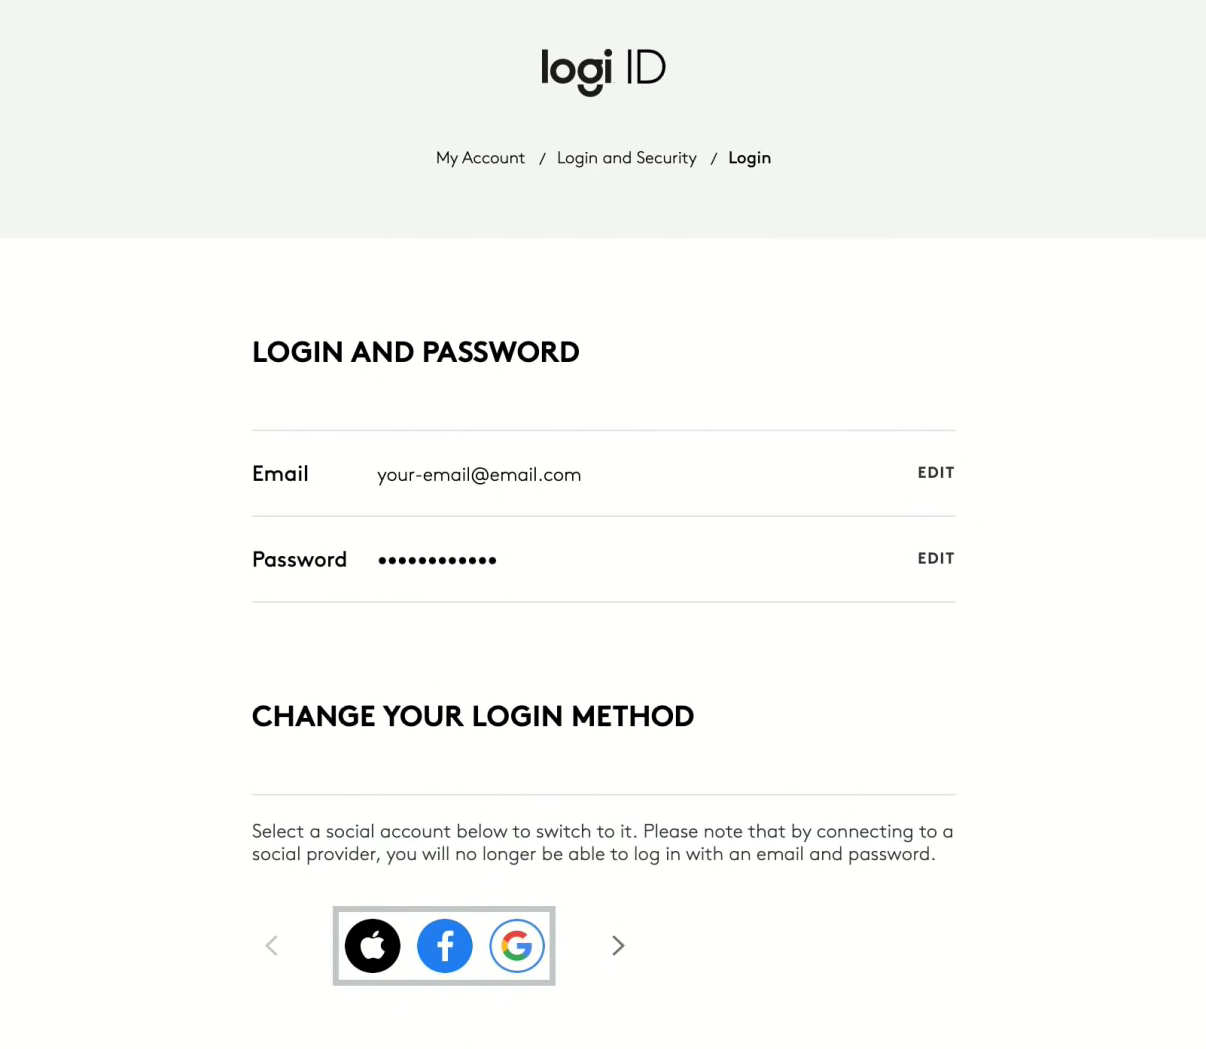 Change your login method window